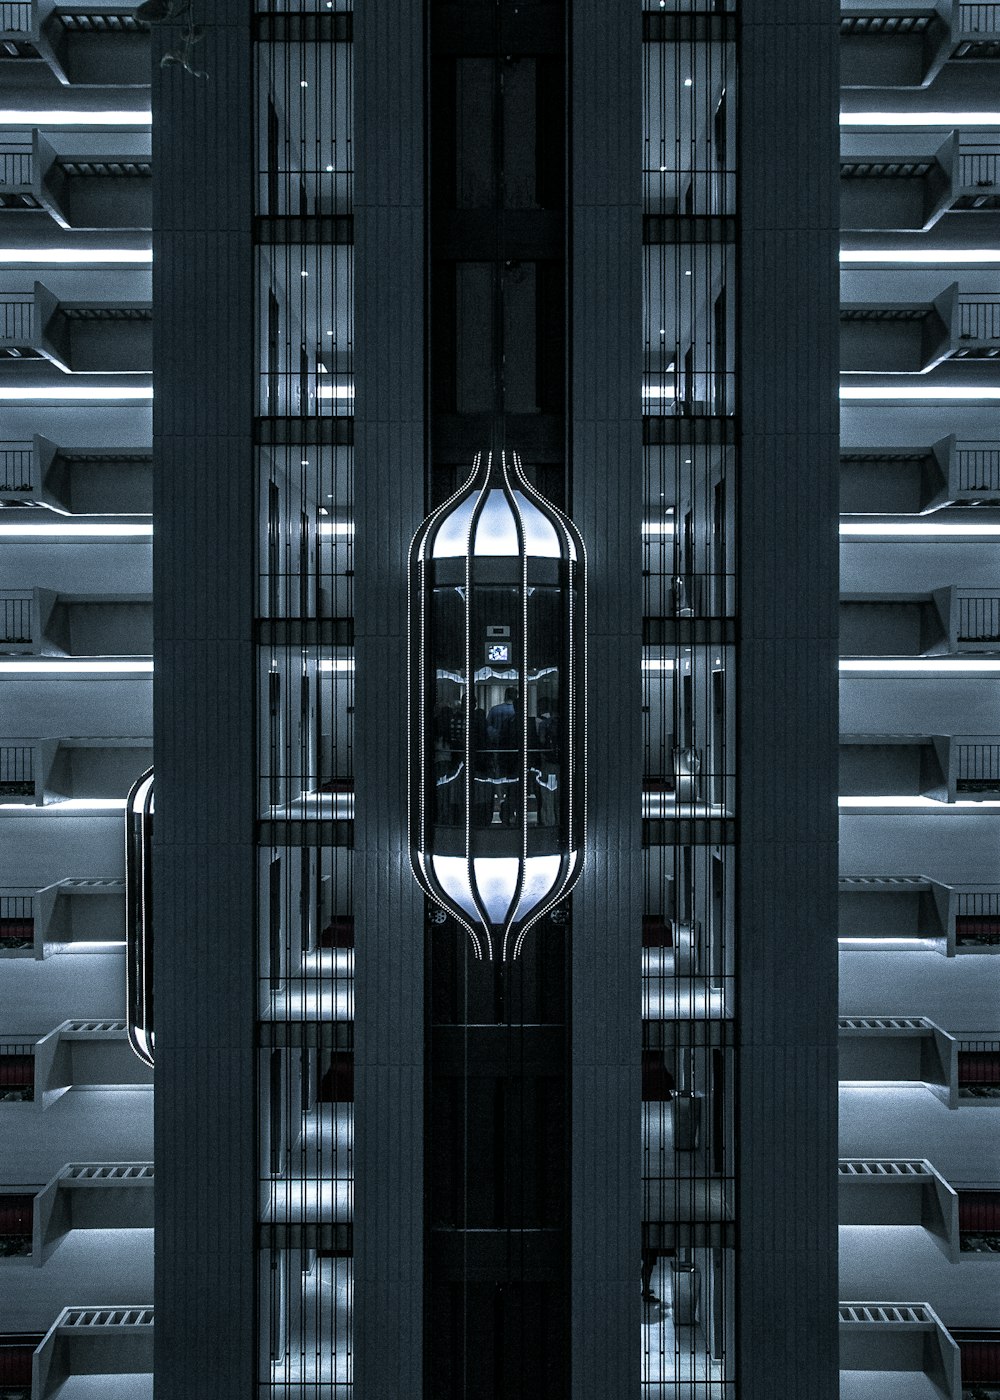 Stadtfoto eines Aufzugs